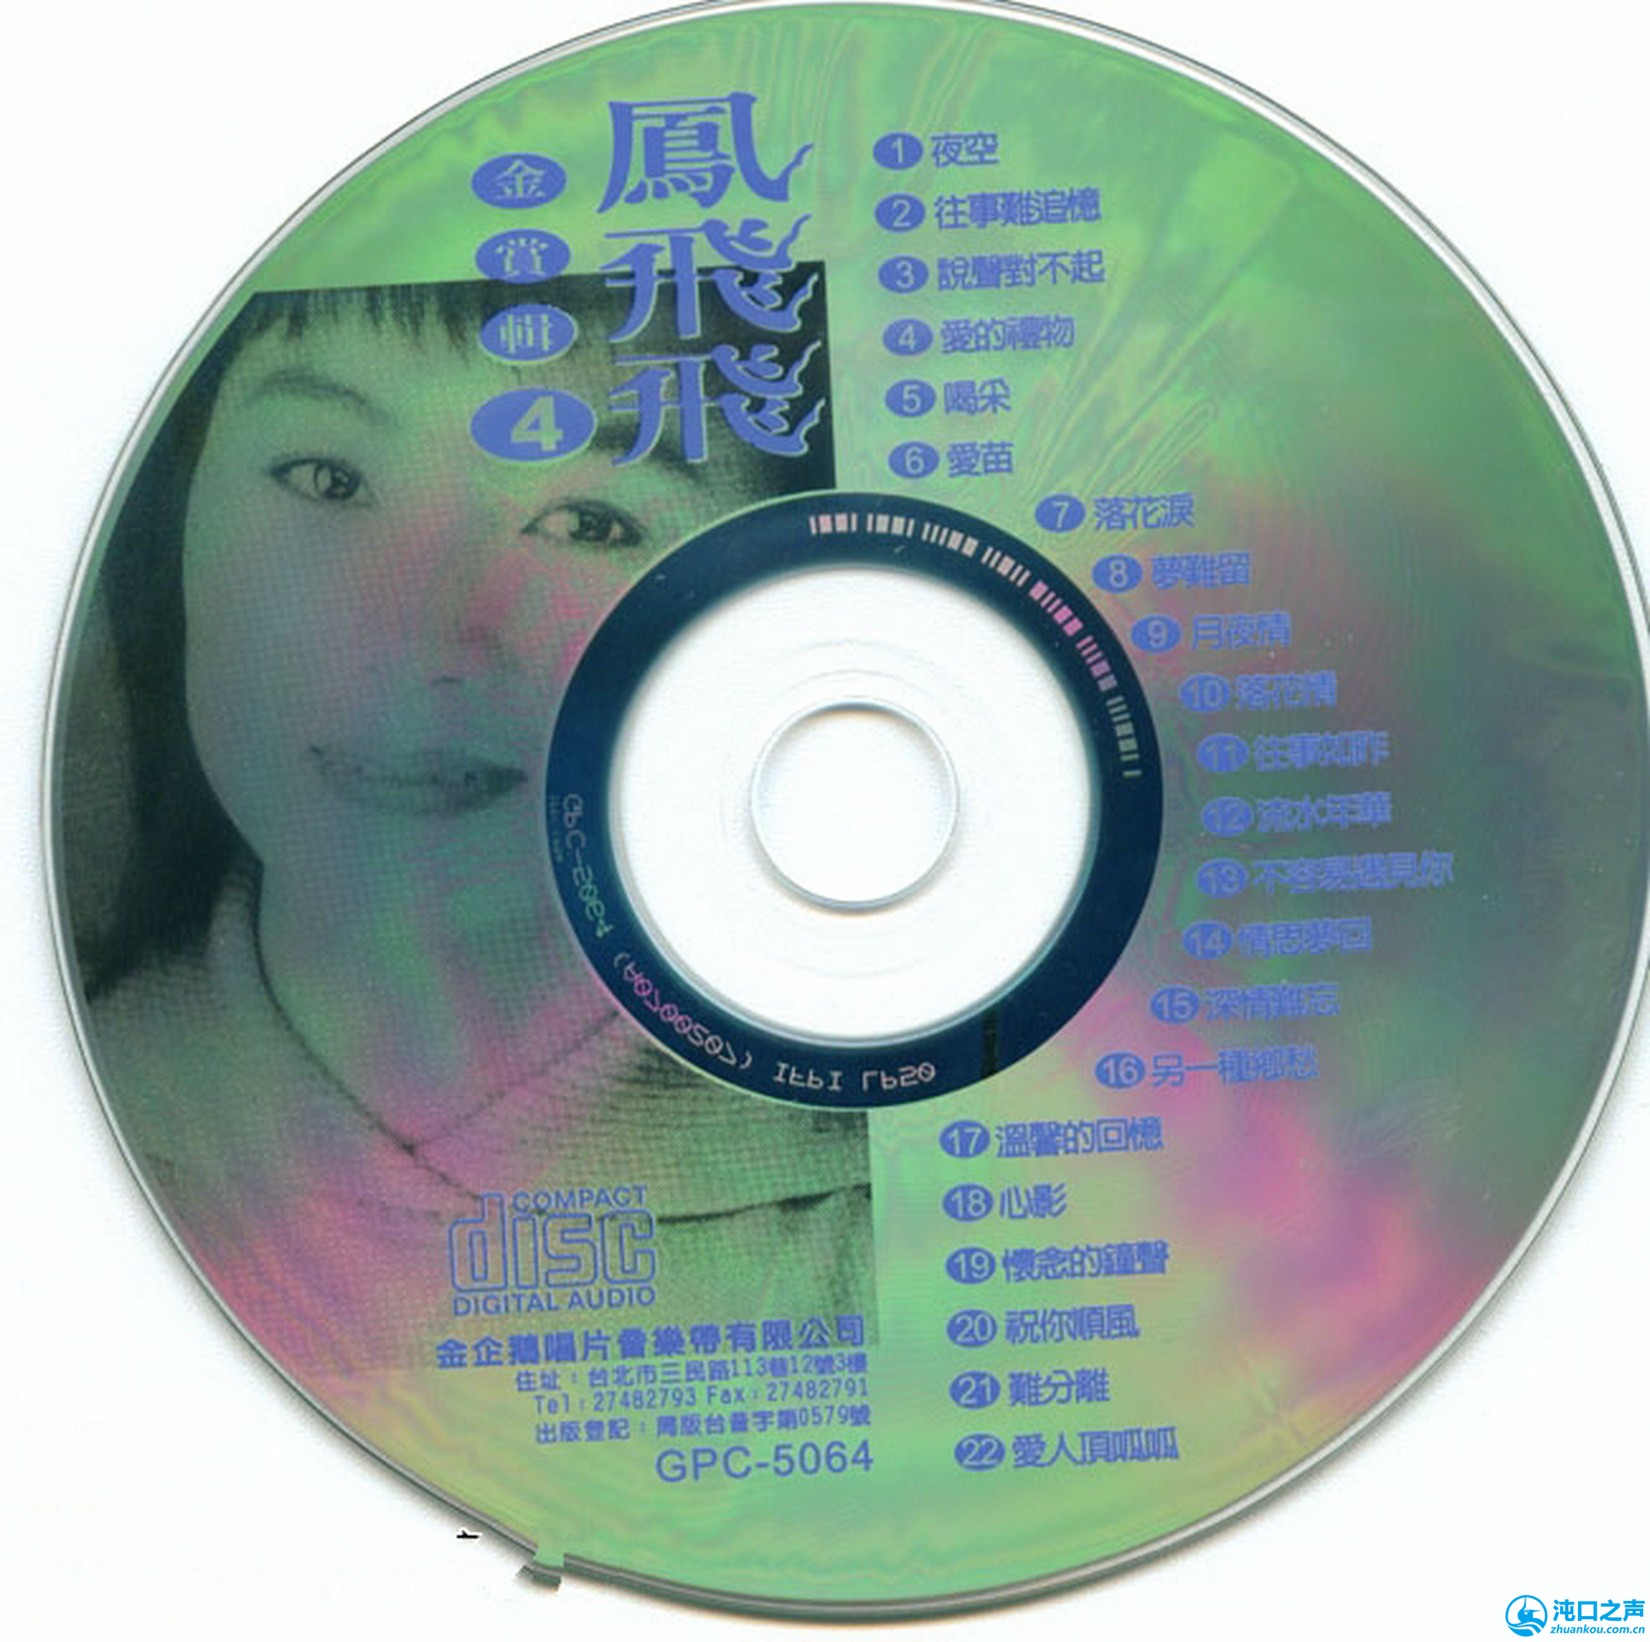 凤飞飞专辑《金赏辑》8CD(金企鹅)[WAV+CUE] - 休闲娱乐- 沌口之声手机版